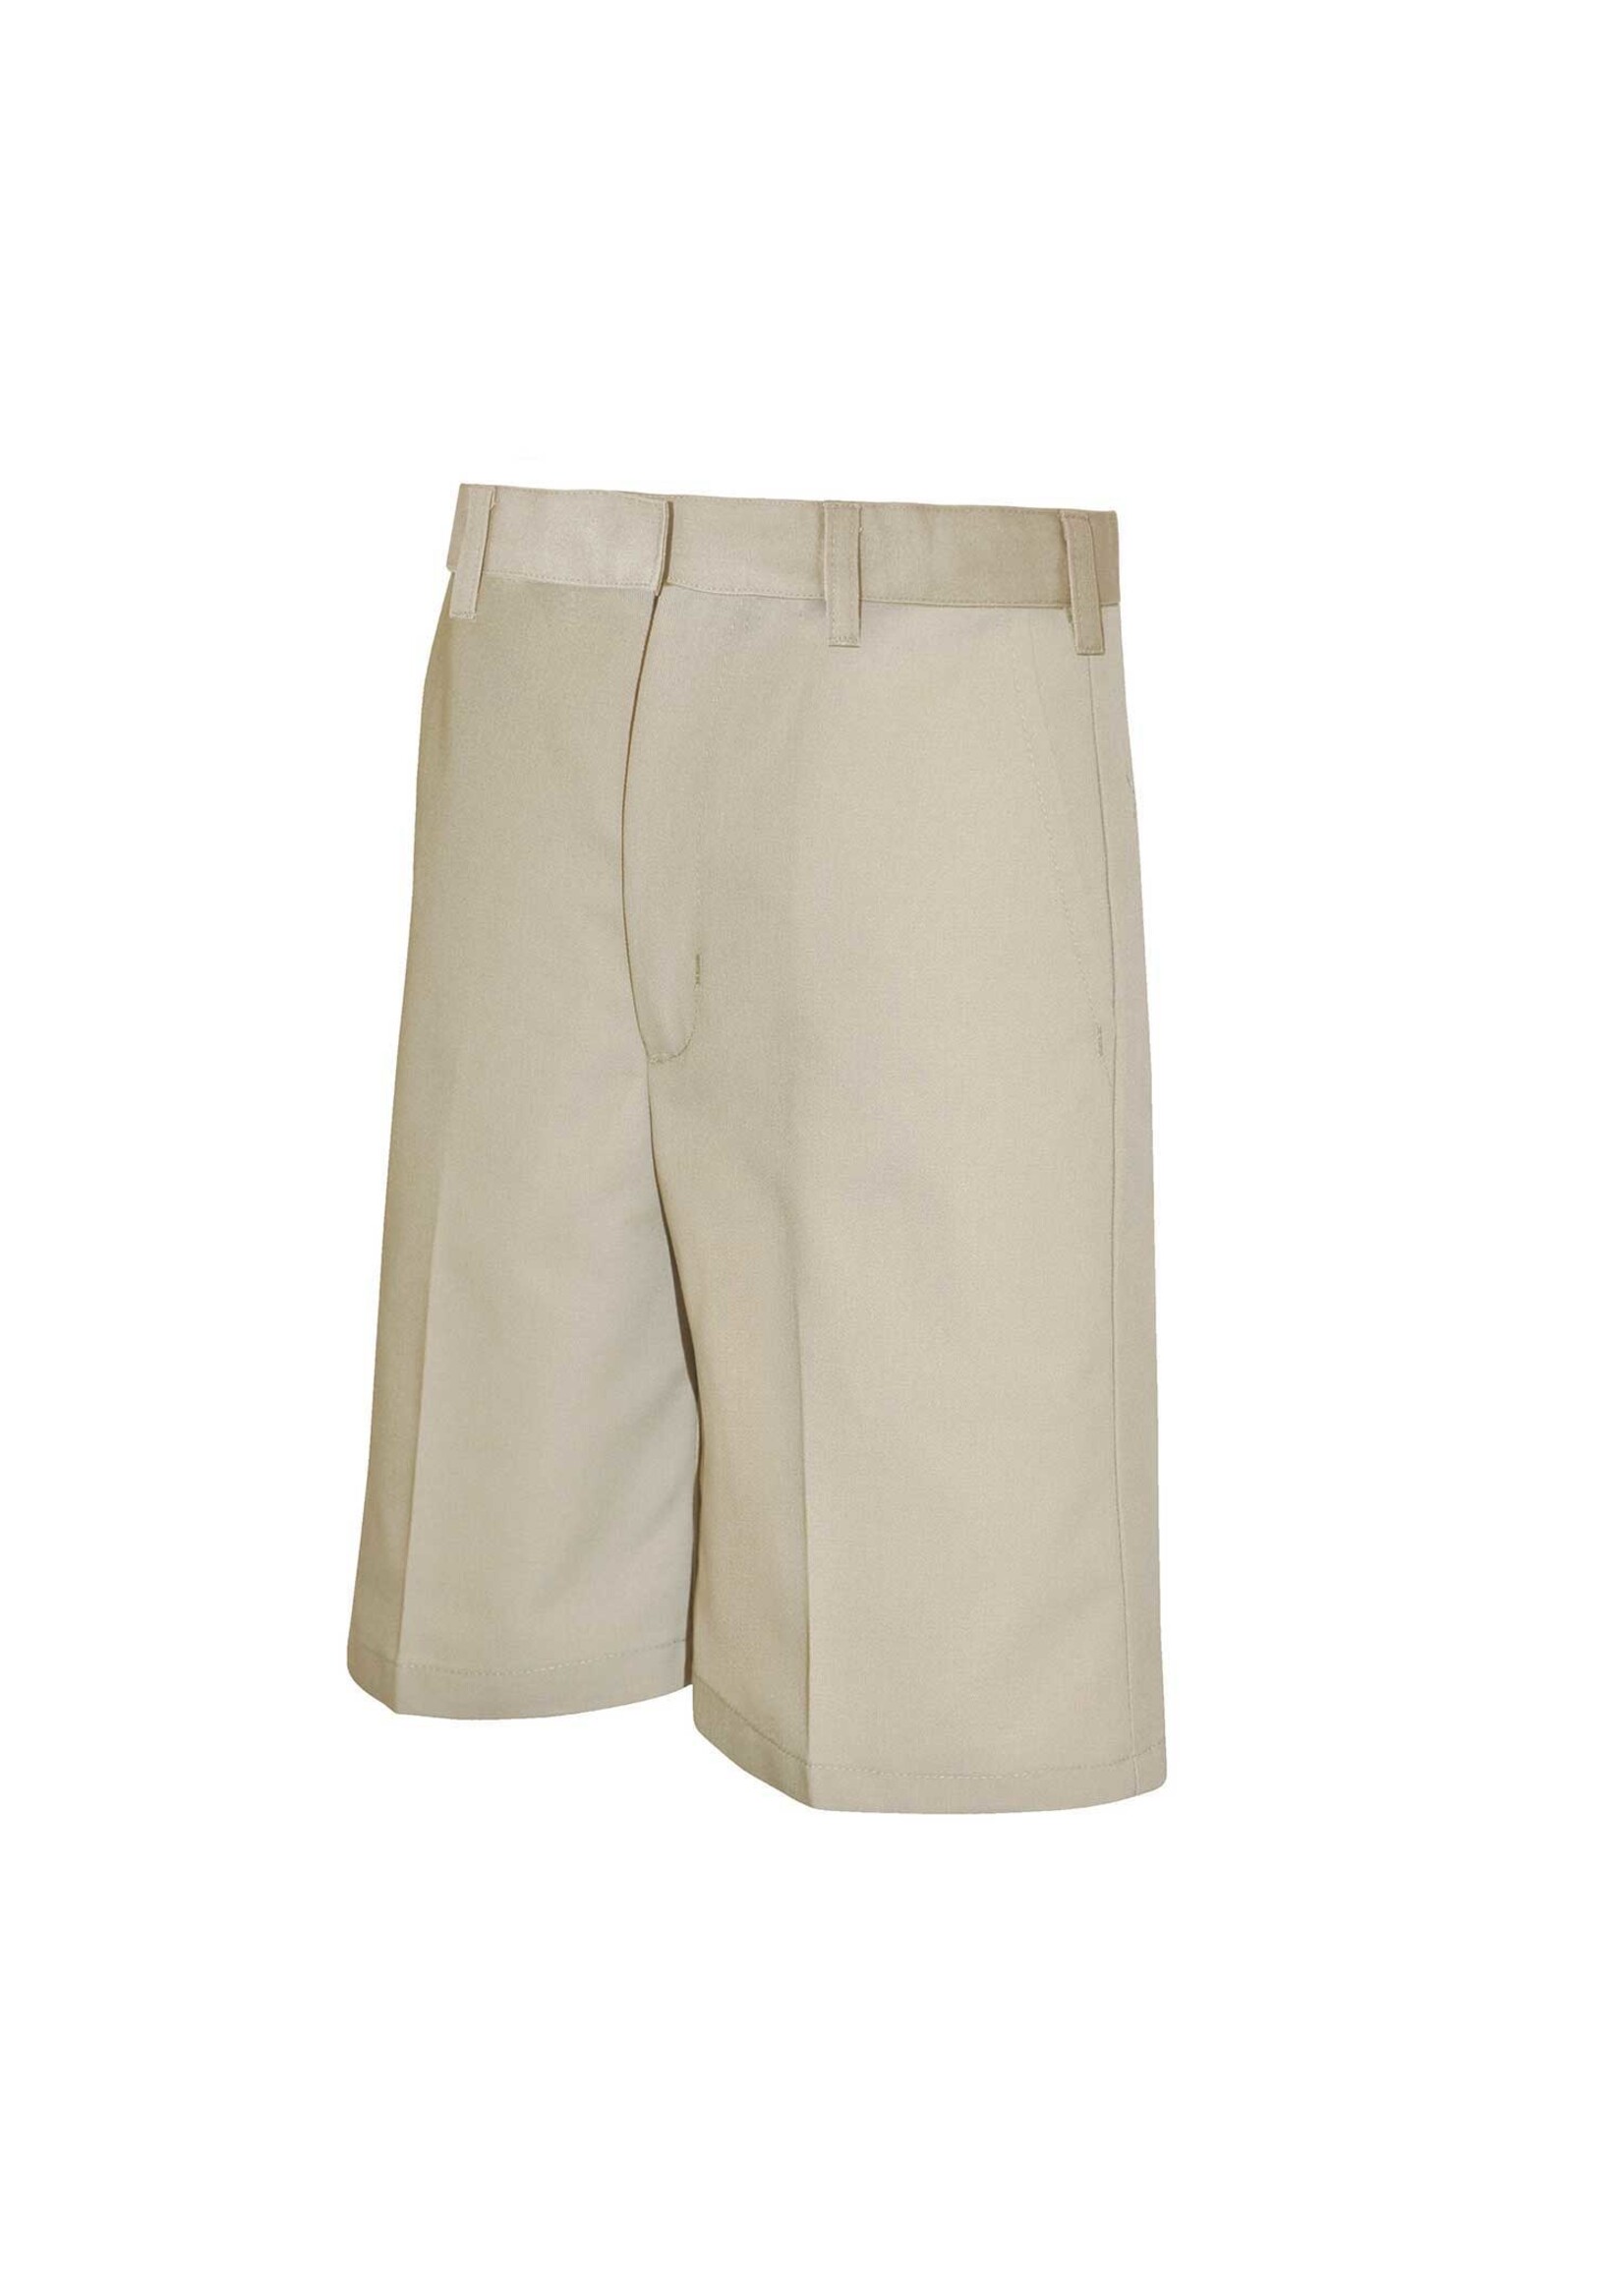 Khaki Boys Flat Front Shorts